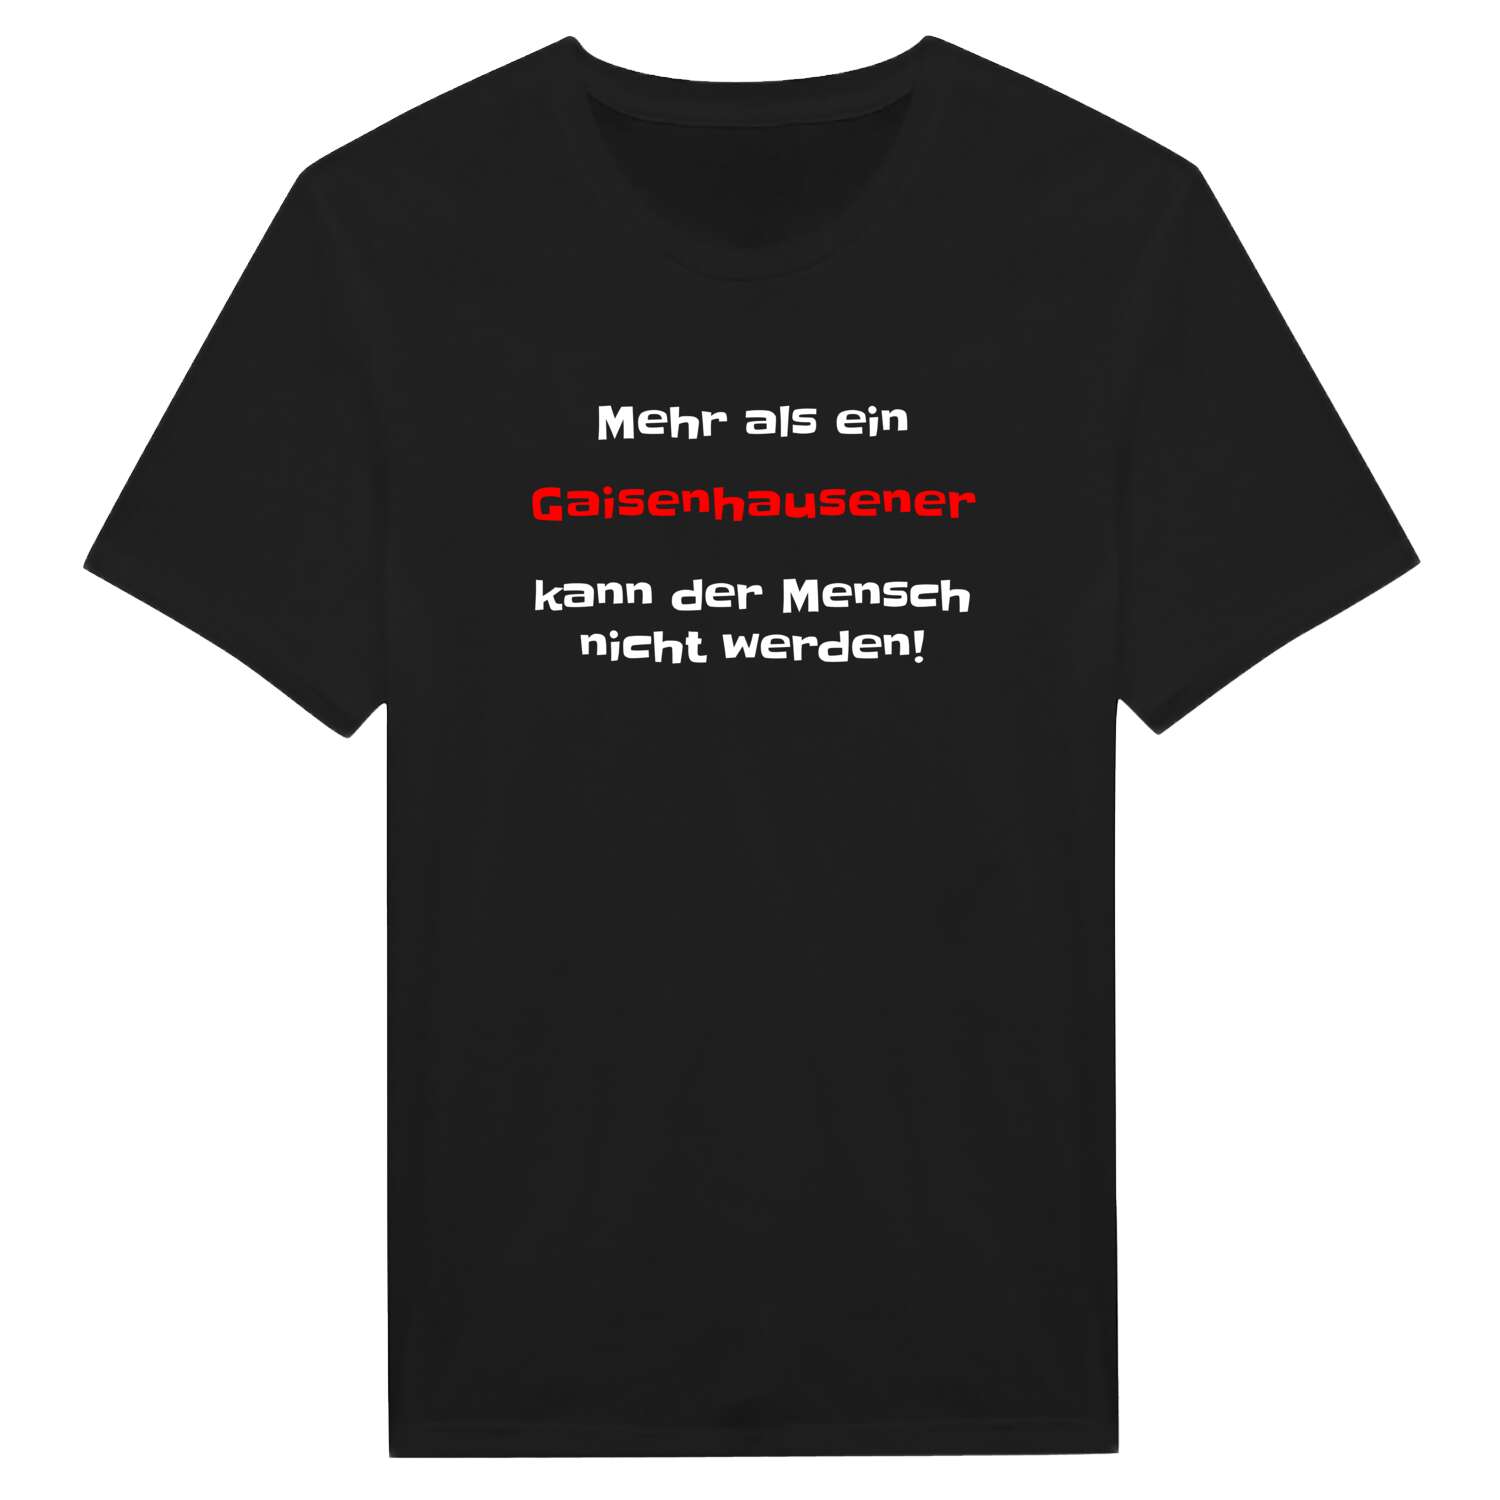 Gaisenhausen T-Shirt »Mehr als ein«